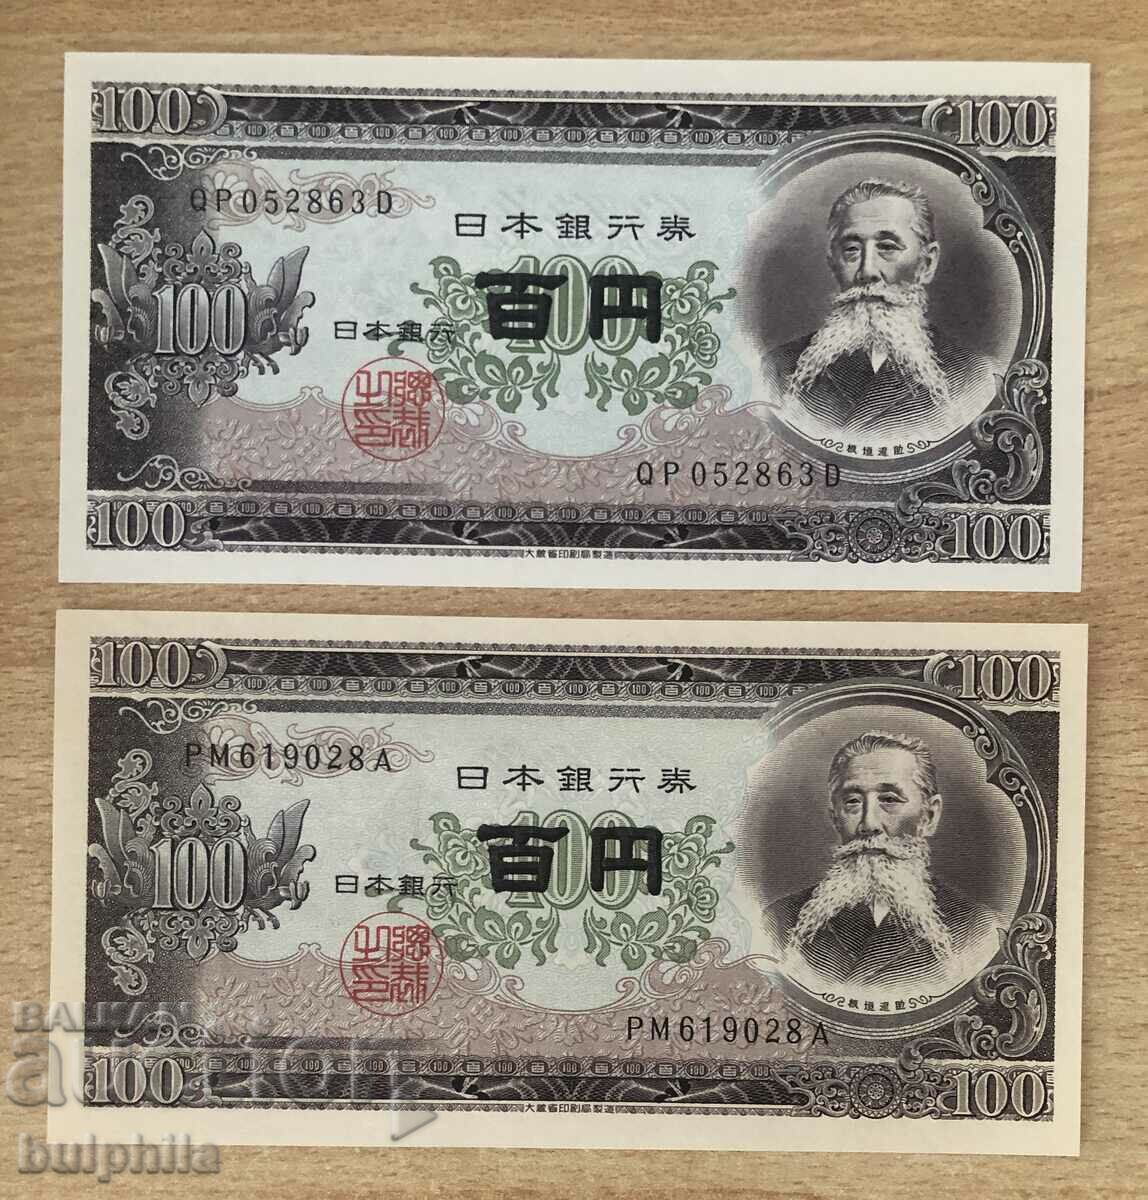 Ιαπωνία 100 γιεν 1953, και τα δύο είδη χαρτιού, αχρησιμοποίητα